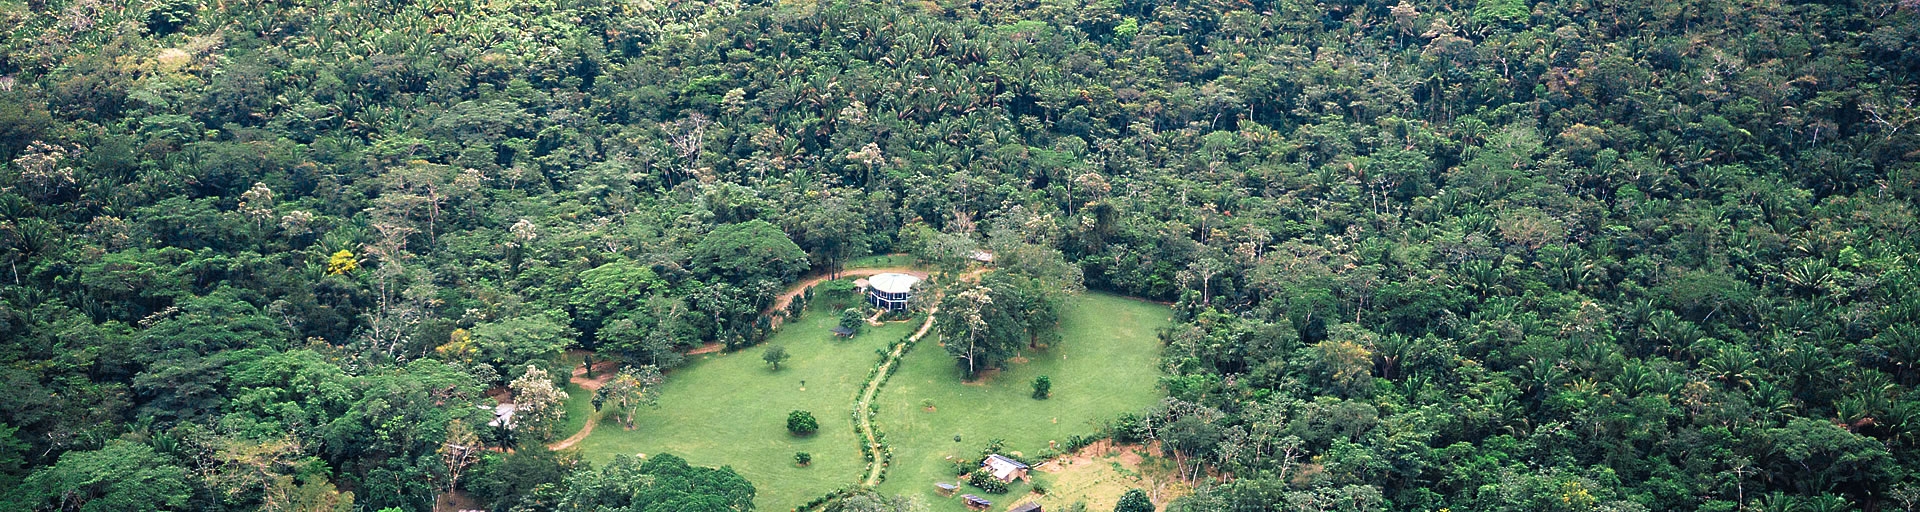 Rainforest-Vista at an all-inclusive jungle resort